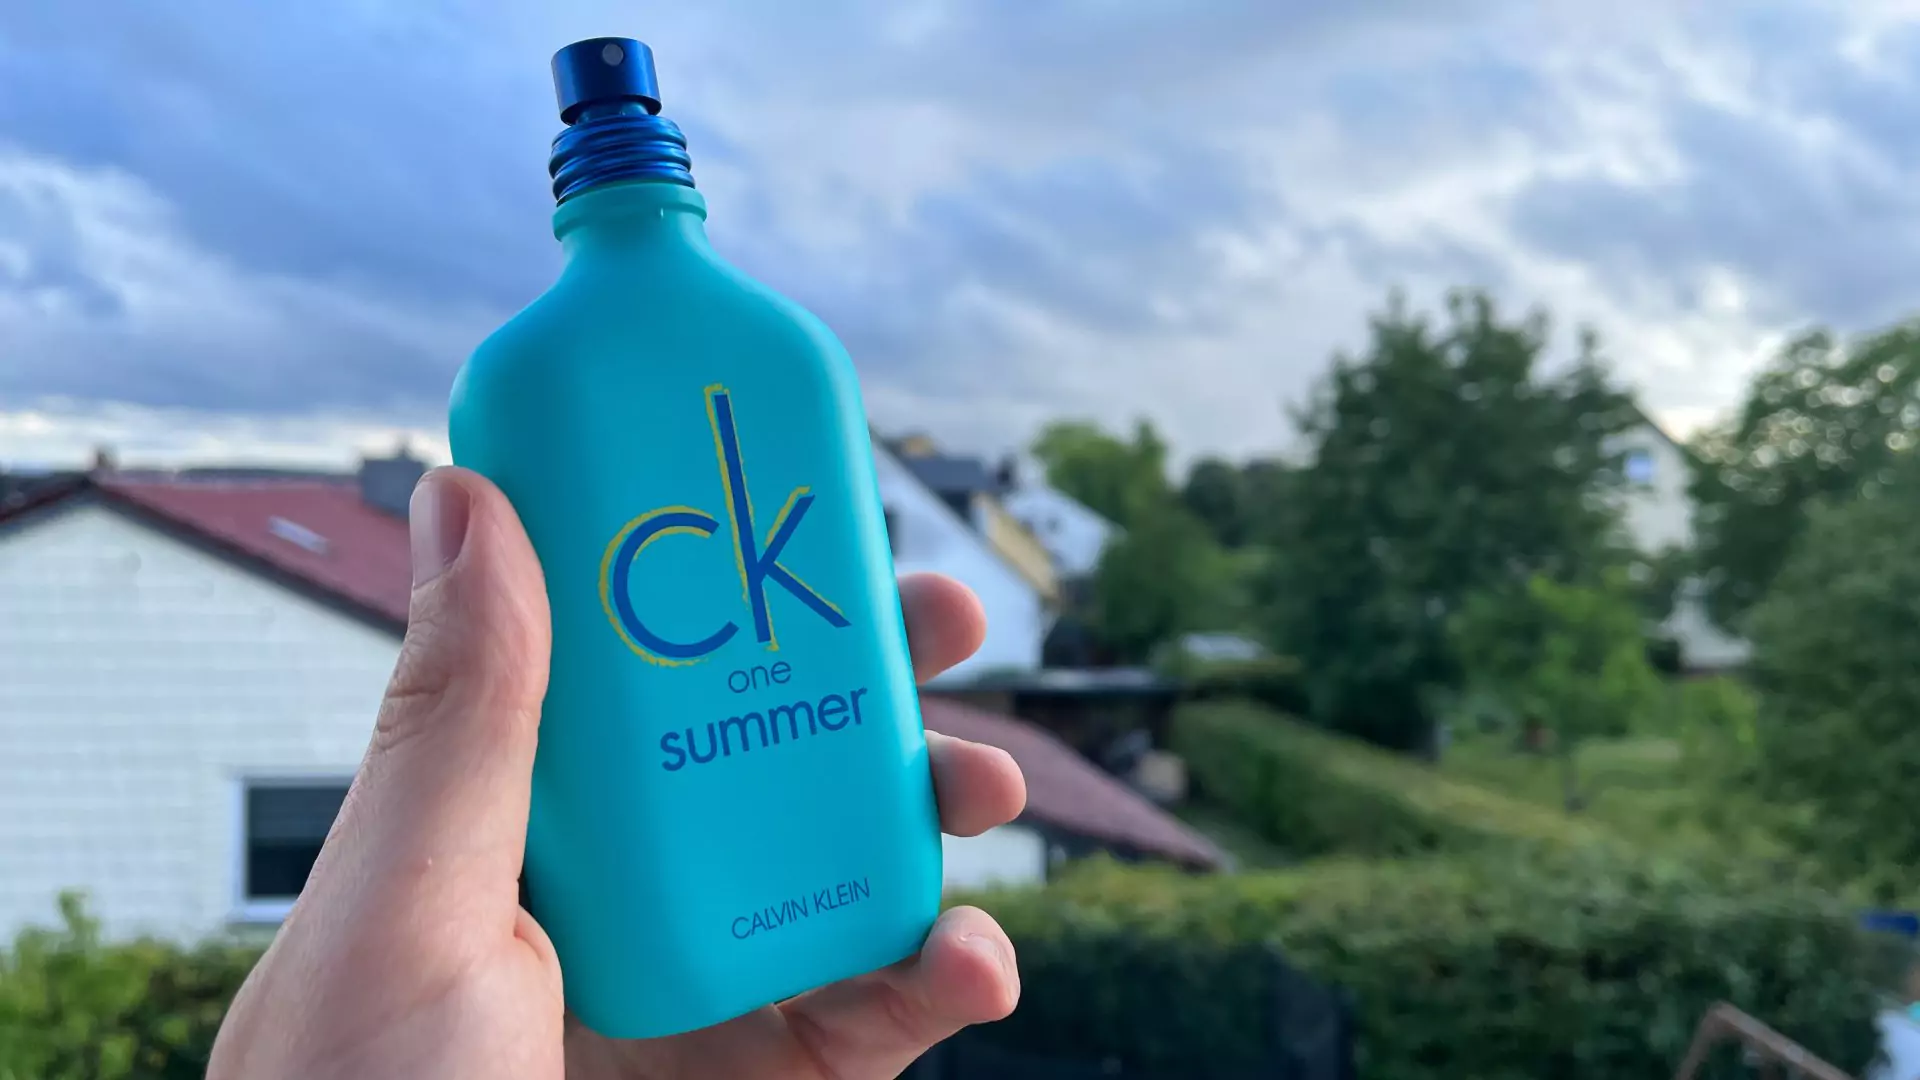 ck-one-summer worth it